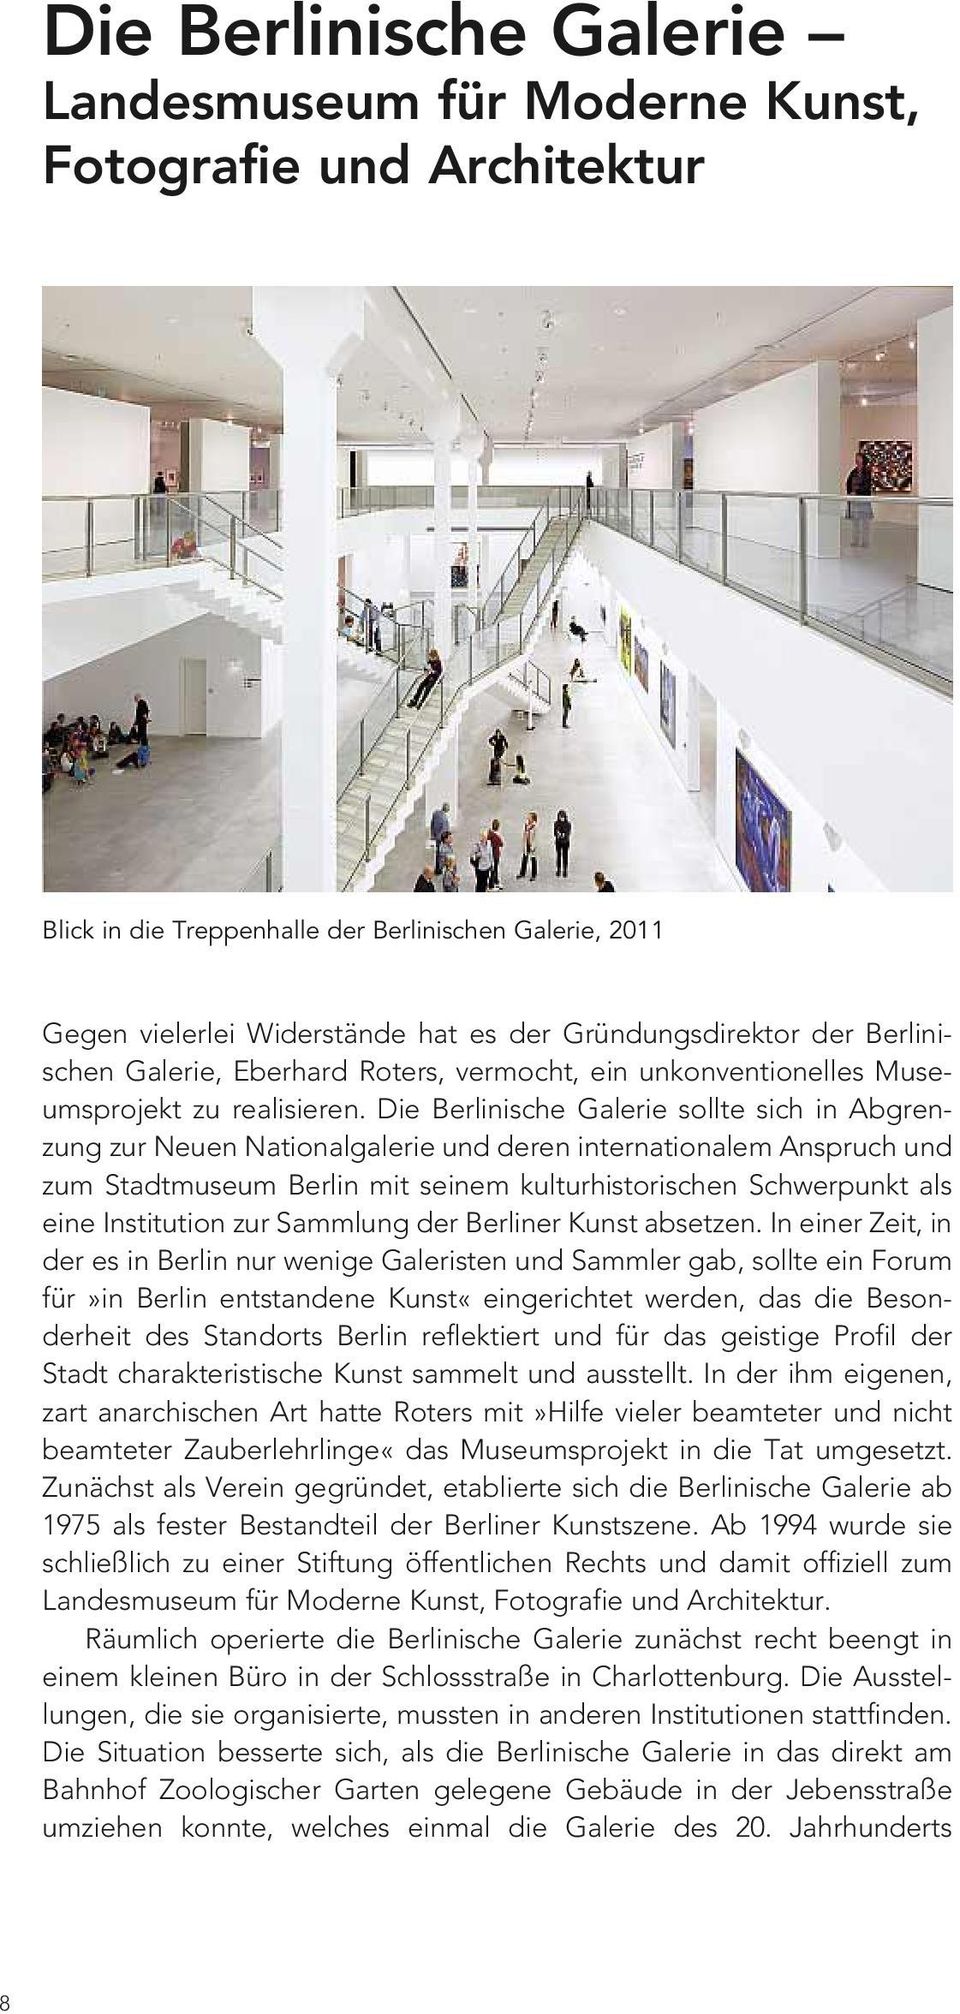 Die Berlinische Galerie sollte sich in Abgrenzung zur Neuen Nationalgalerie und deren internationalem Anspruch und zum Stadtmuseum Berlin mit seinem kulturhistorischen Schwerpunkt als eine